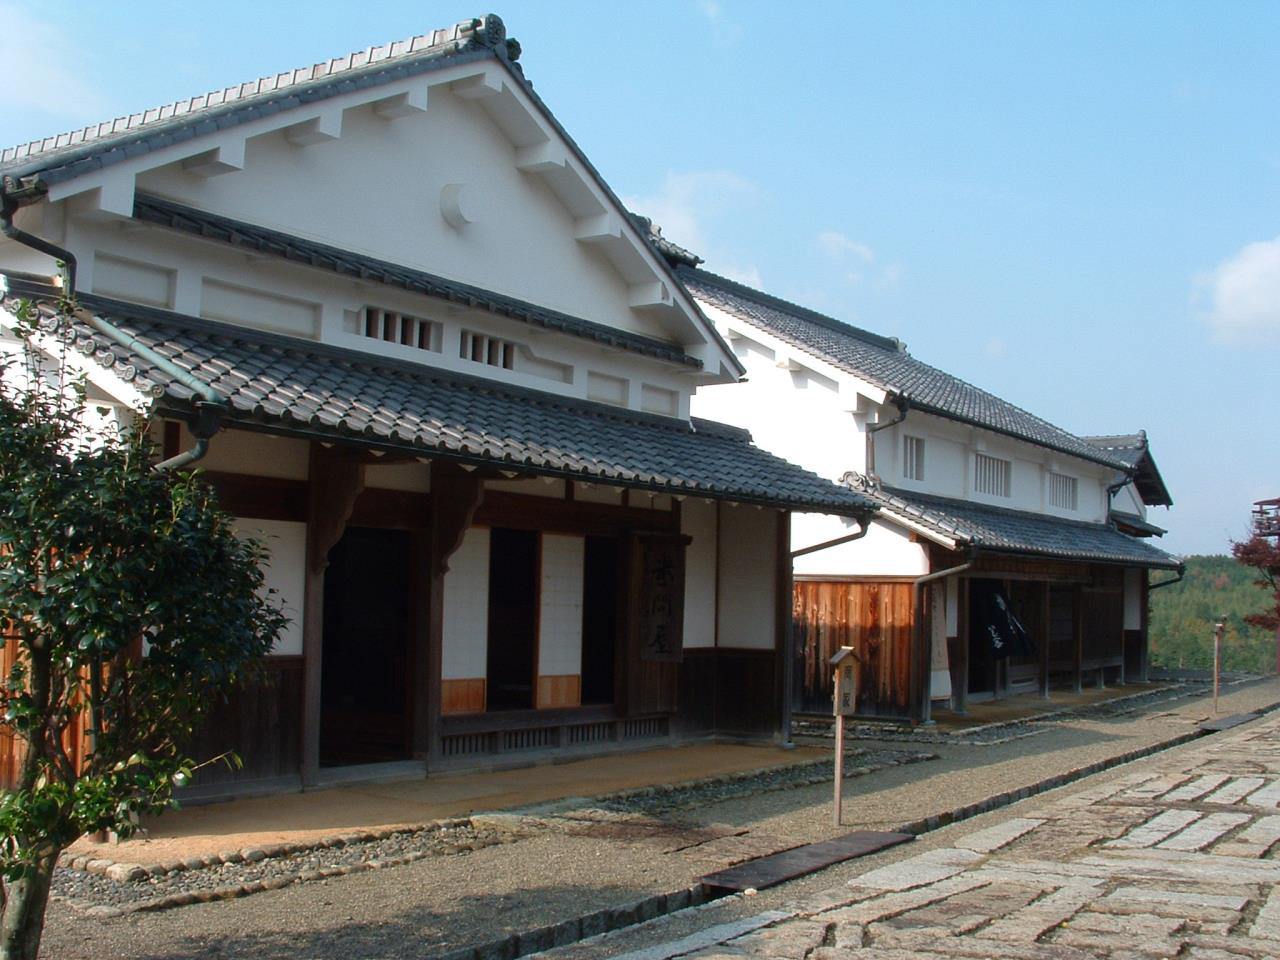 Ishibe Shukuba Village